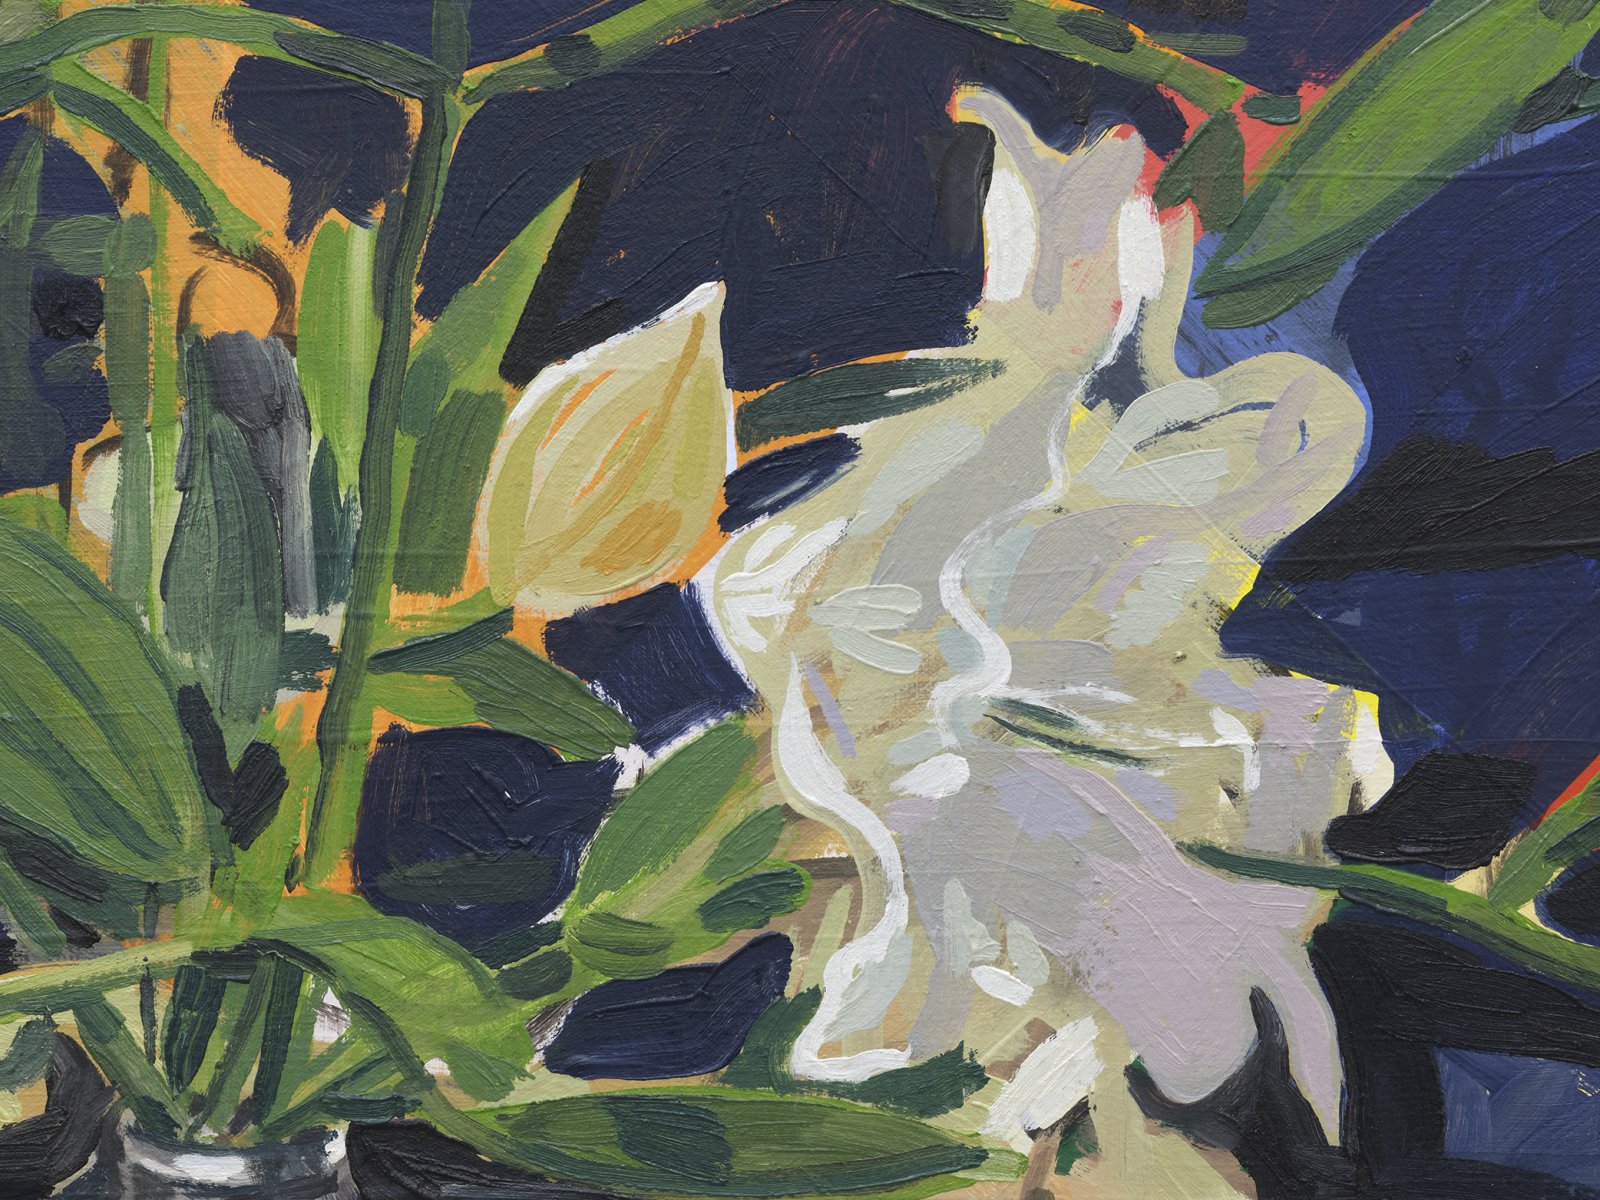 Damian Moppett, Lilies (Pink) (detail), 2020, oil on canvas, 34 x 34 in. (86 x 86 cm) by Damian Moppett